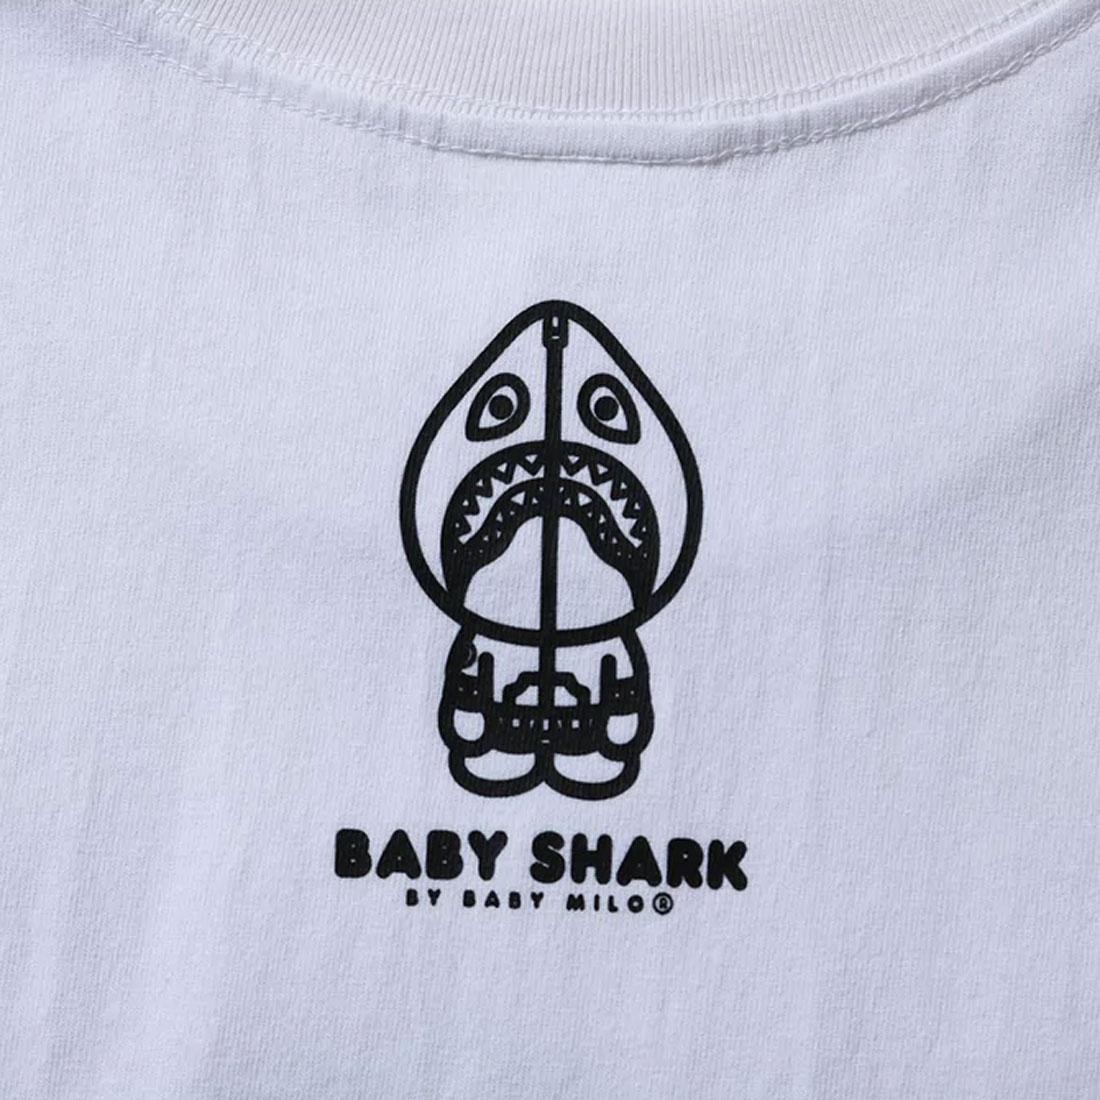 BAPE Baby Milo Bearbrick Shark Tee M (Medicom) White Men's - US